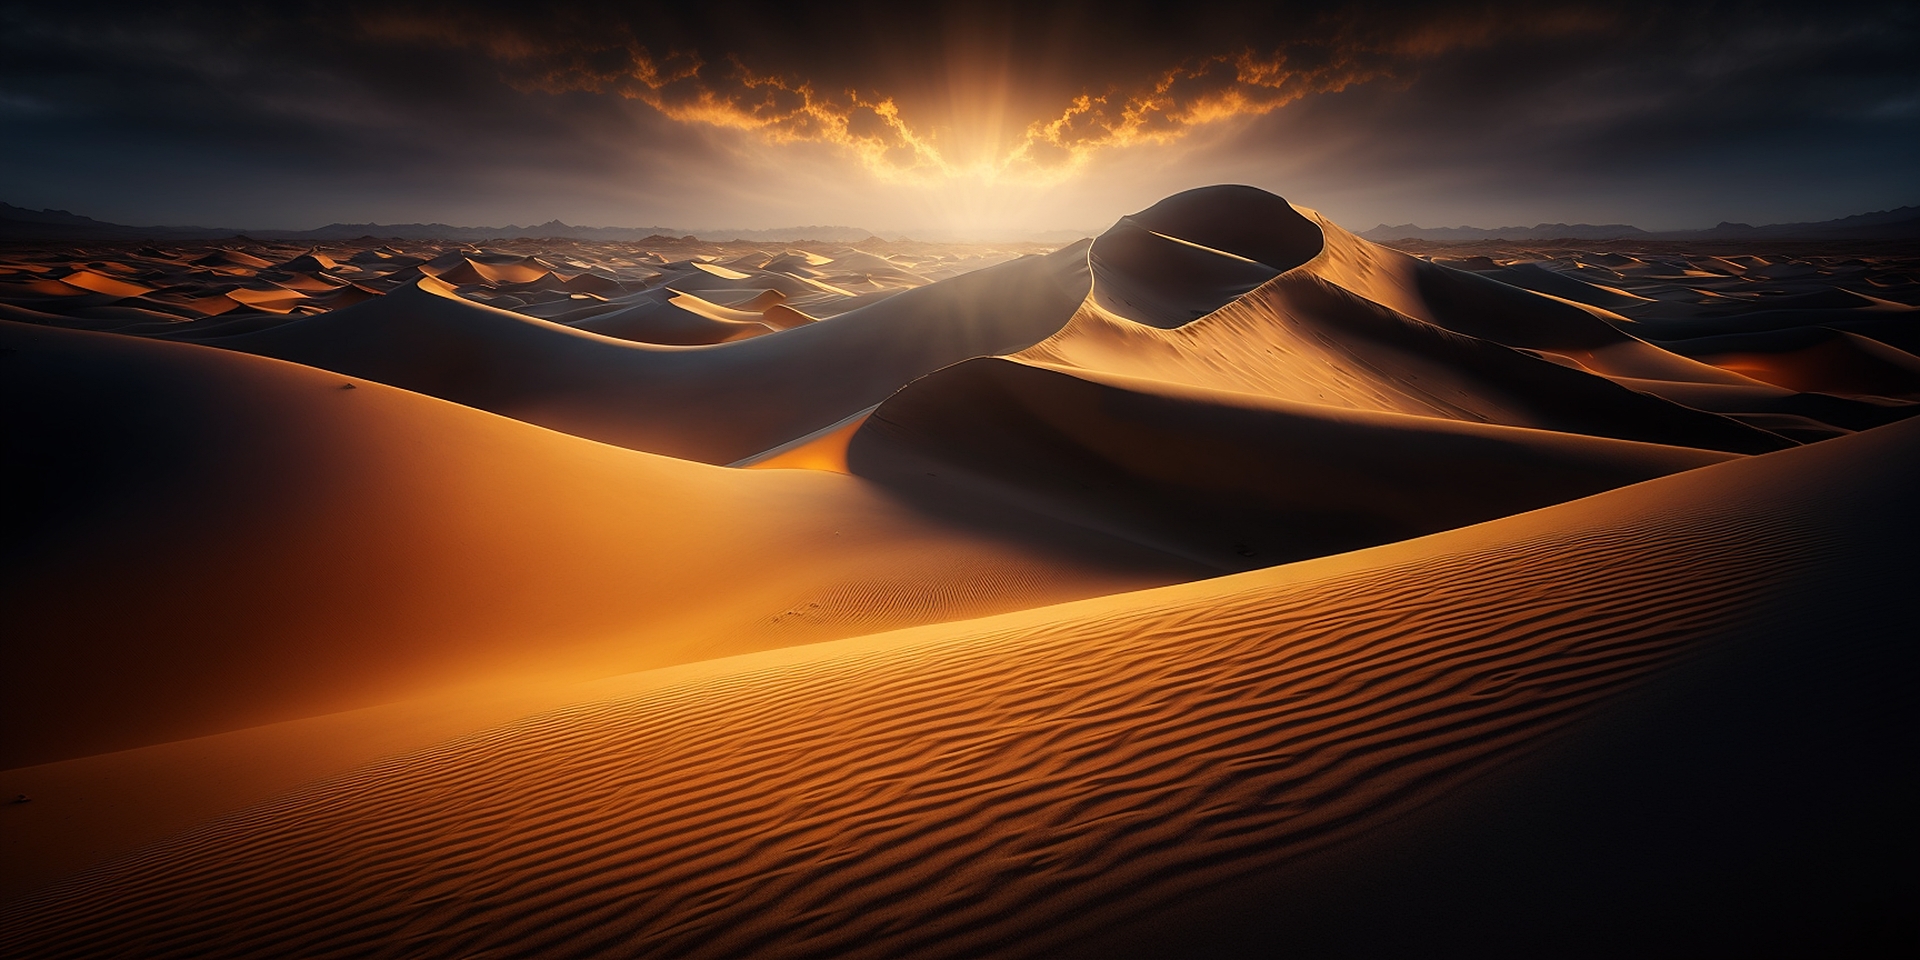 co je to saharský písek. a jak se z pouště dostane až k nám?